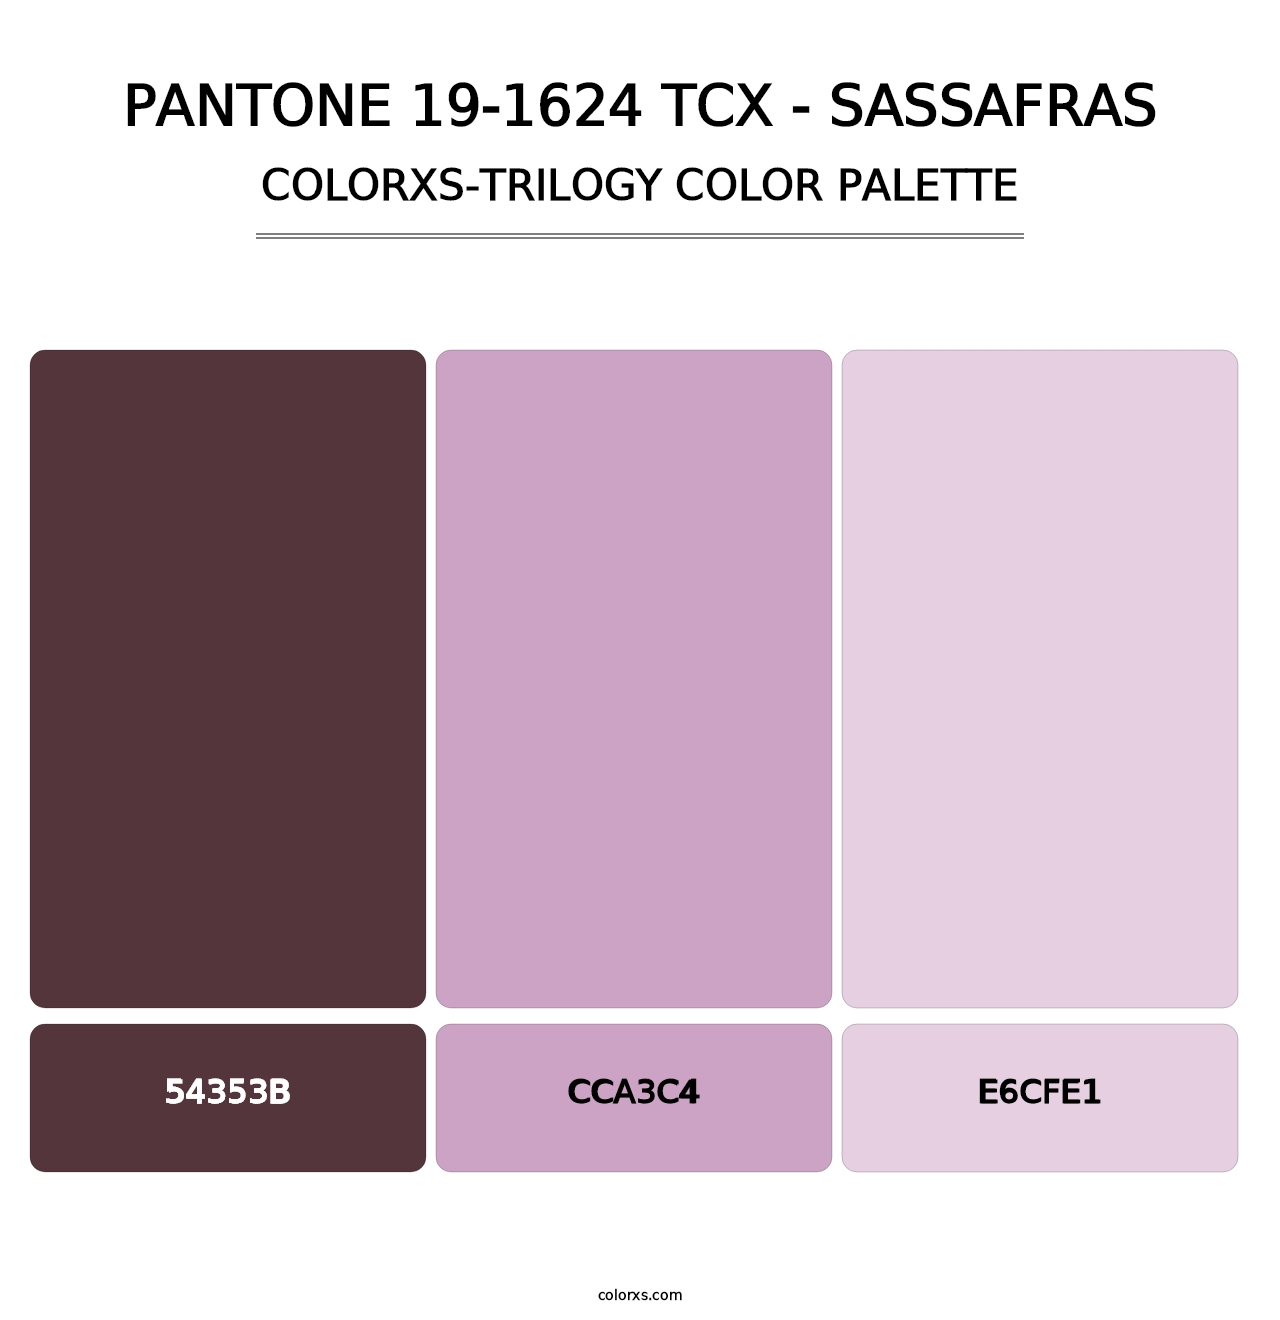 PANTONE 19-1624 TCX - Sassafras - Colorxs Trilogy Palette